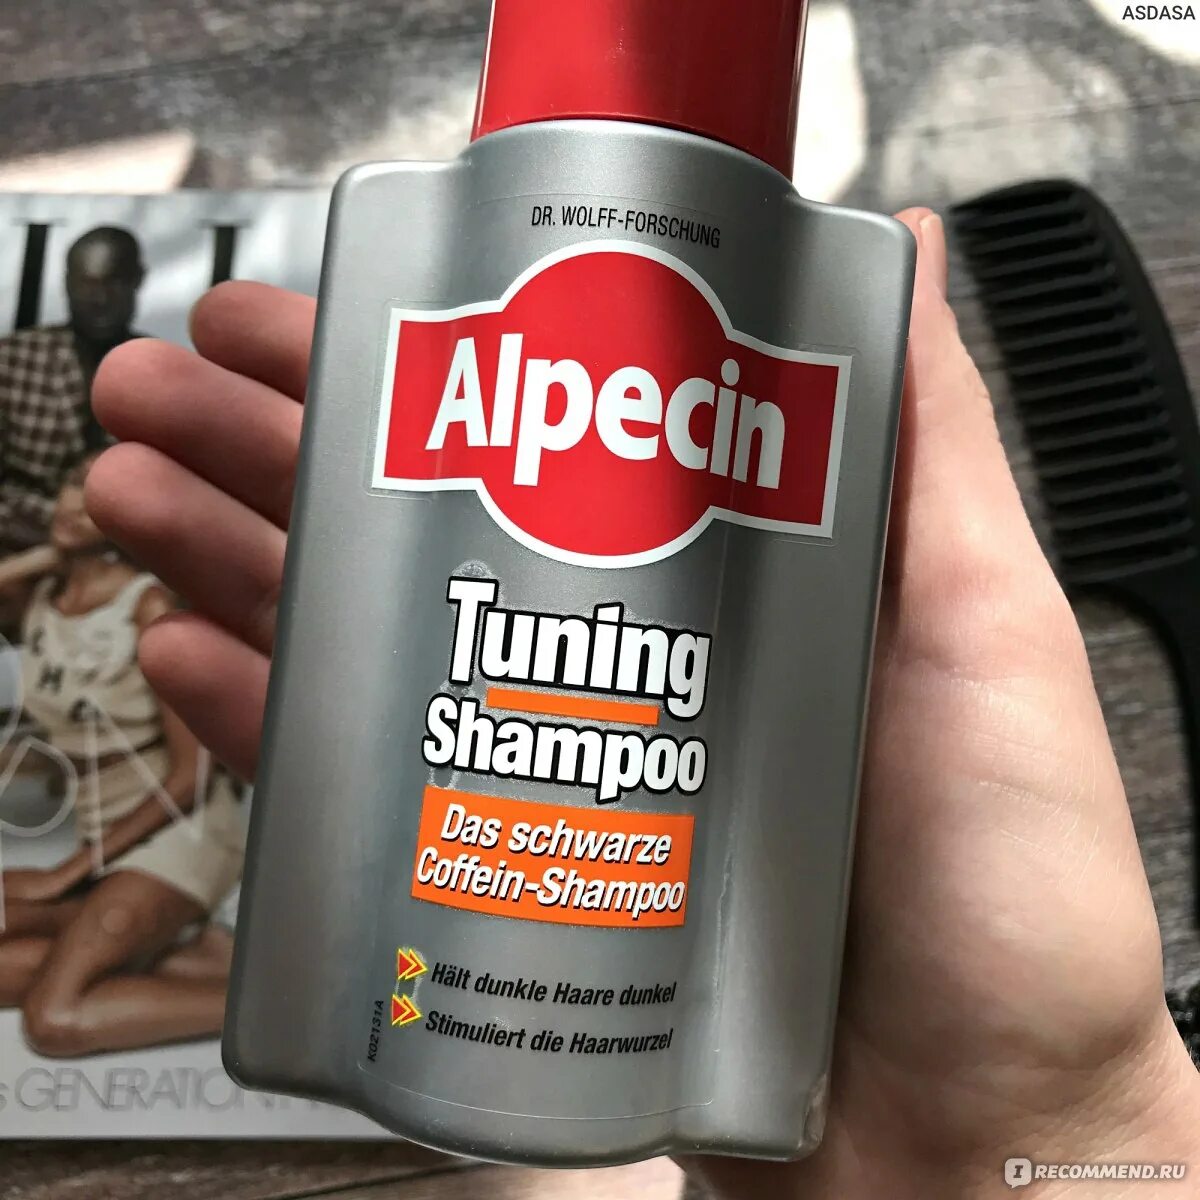 Шампунь tune. Alpecin. Alpecin отзывы. Alpecin Tuning Shampoo способ применение.